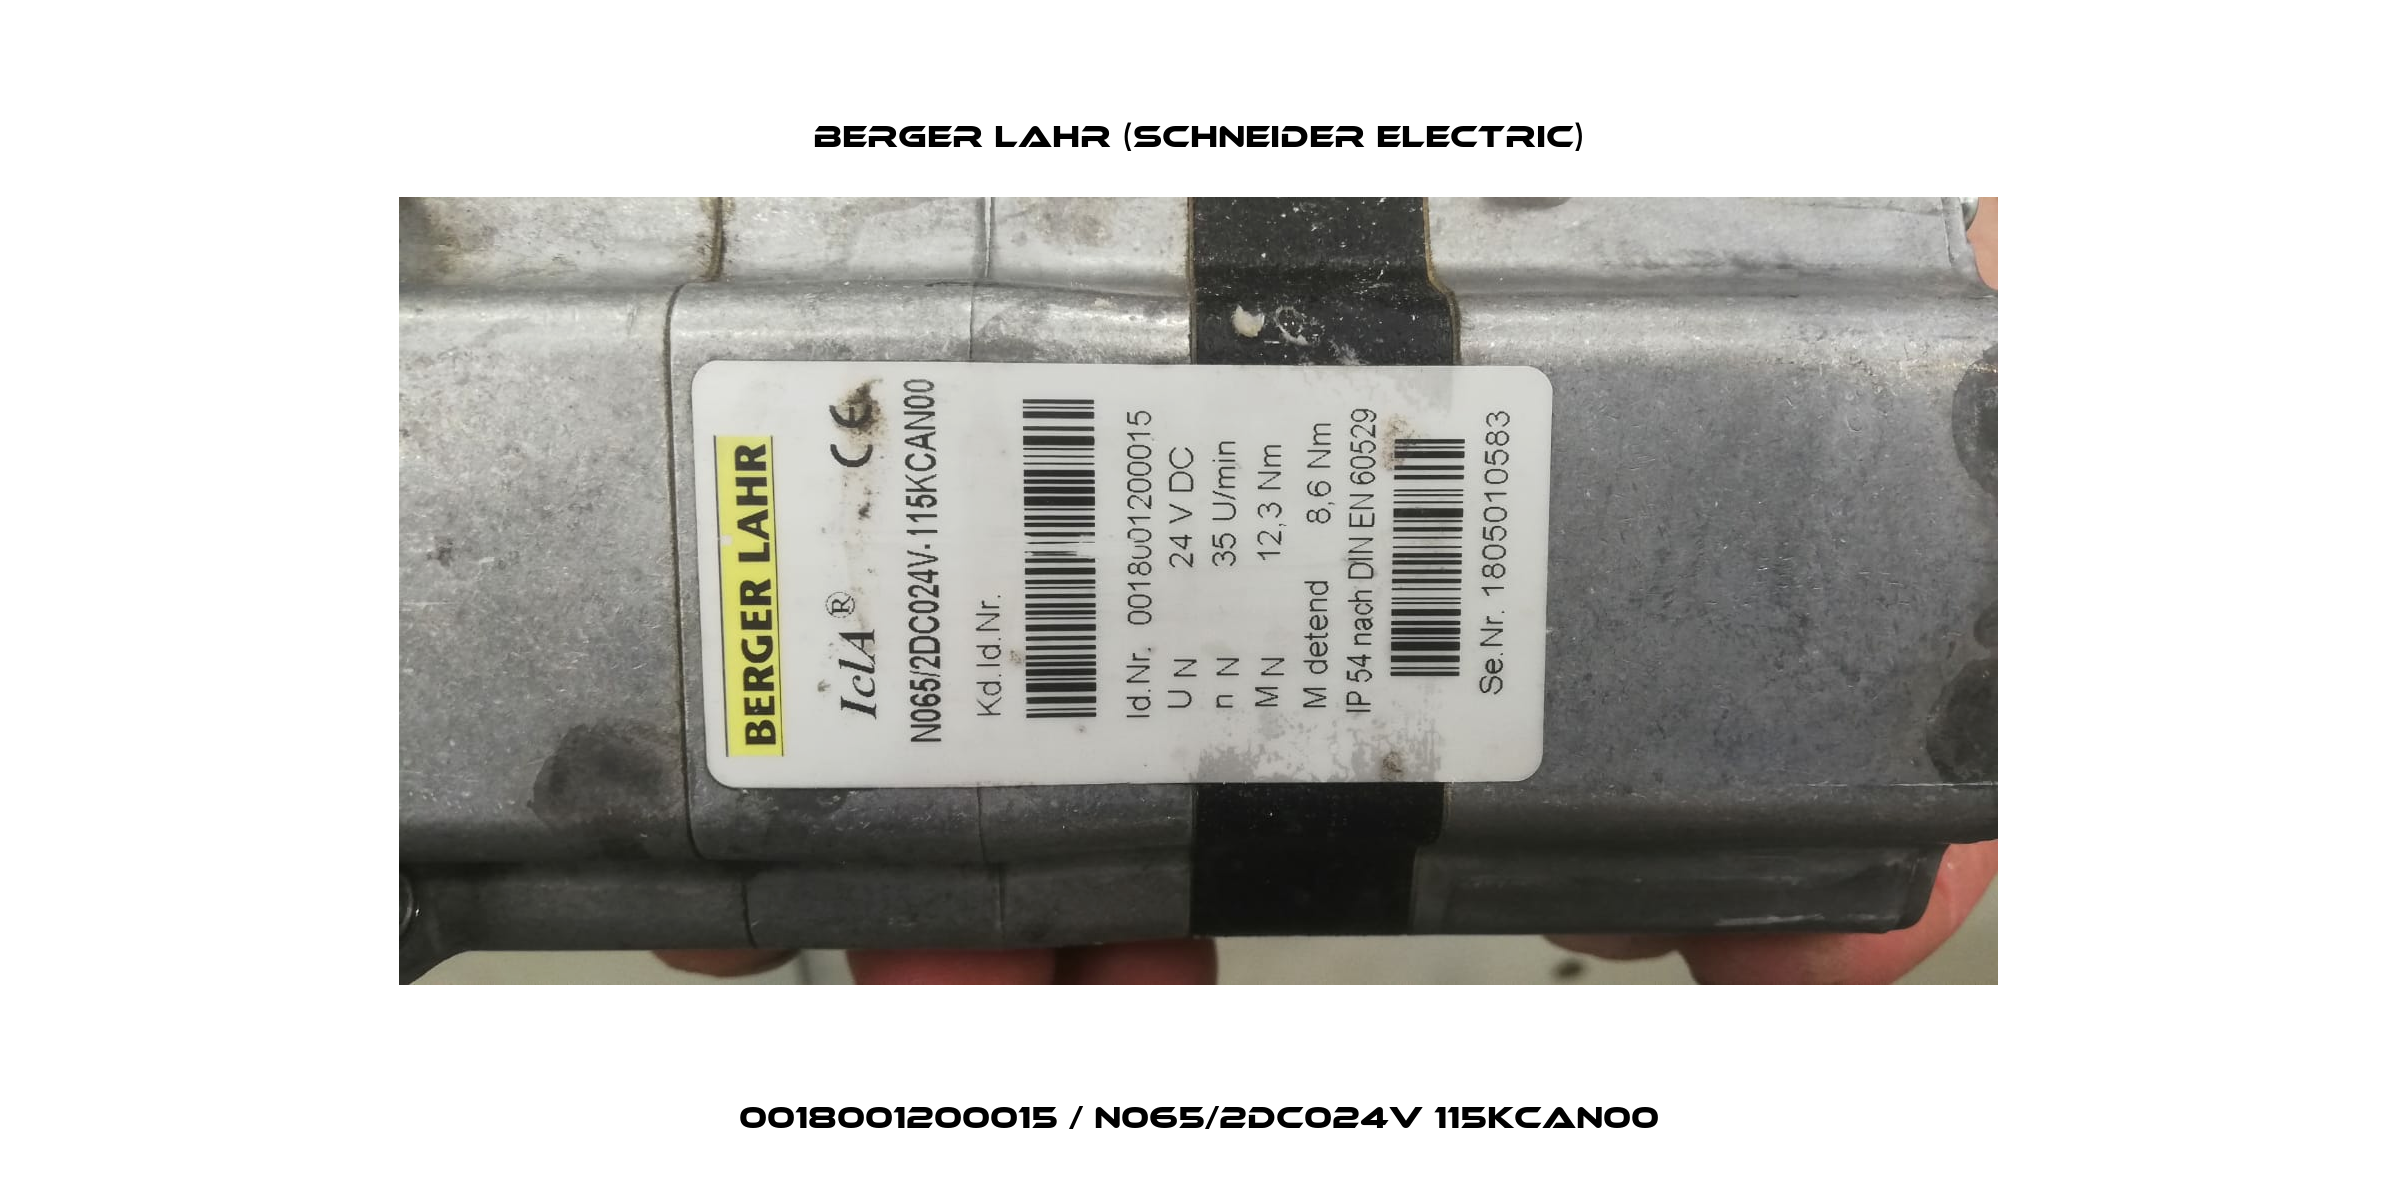 0018001200015 / N065/2DC024V 115KCAN00 Berger Lahr (Schneider Electric)